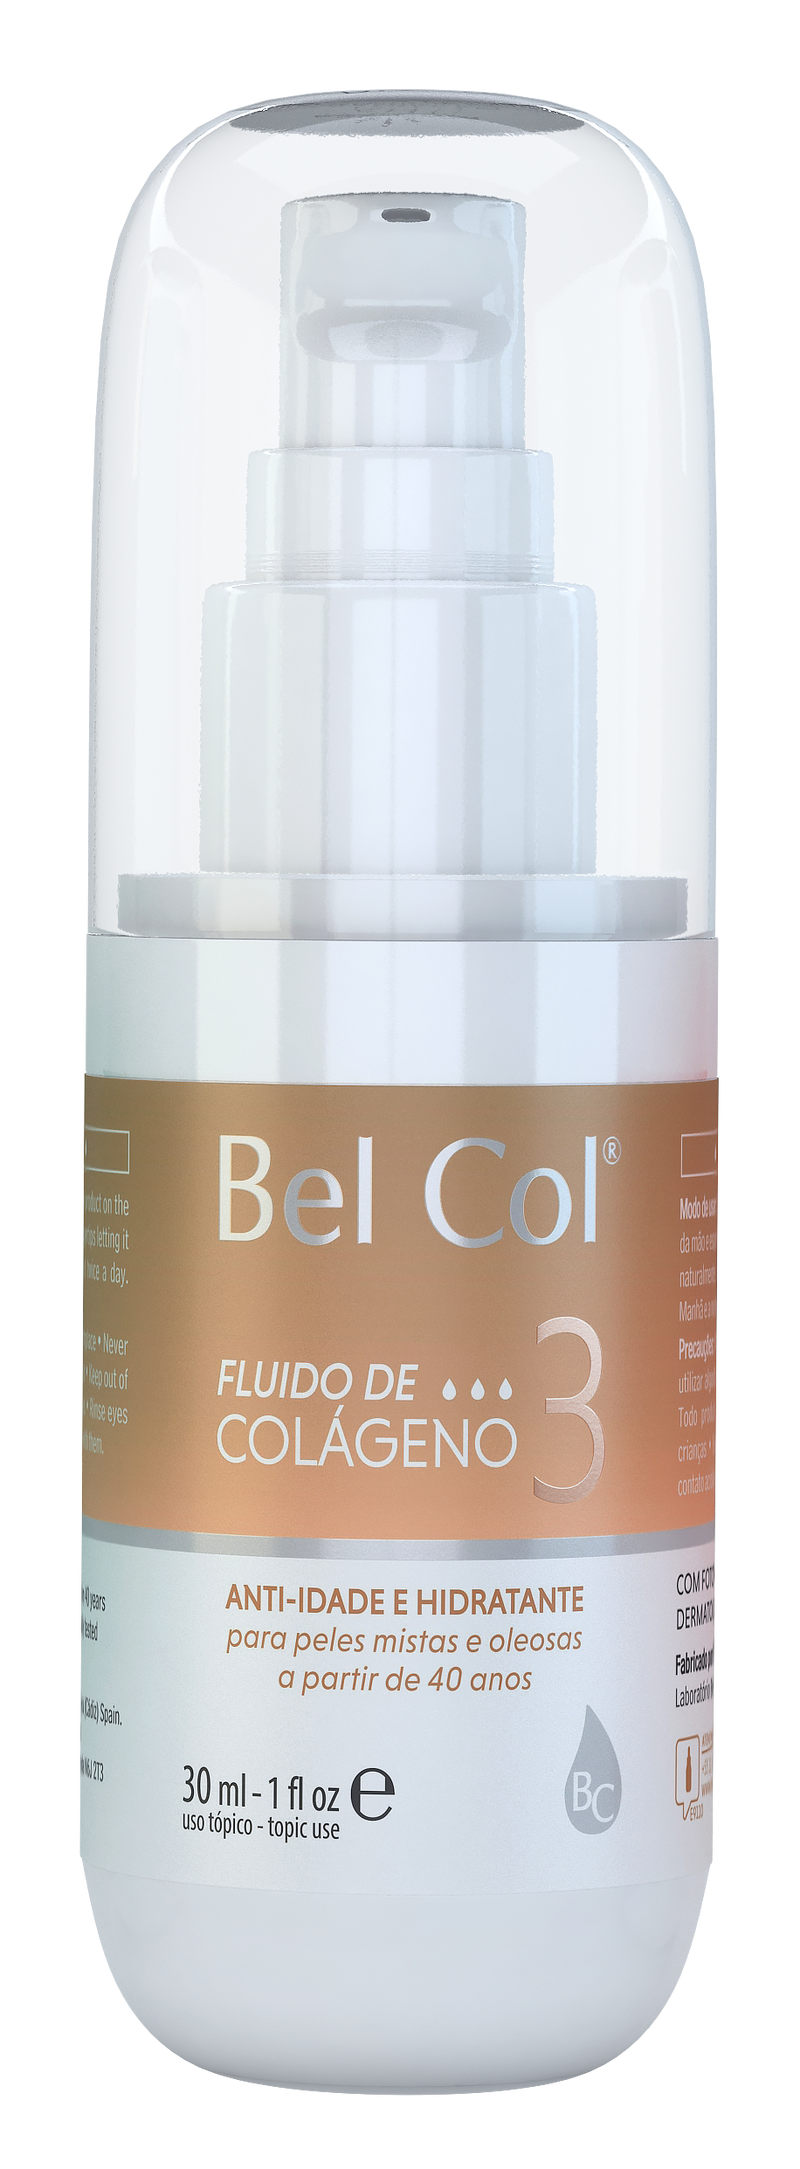 Bel Col 3 - Fluido de colageno 30 ML